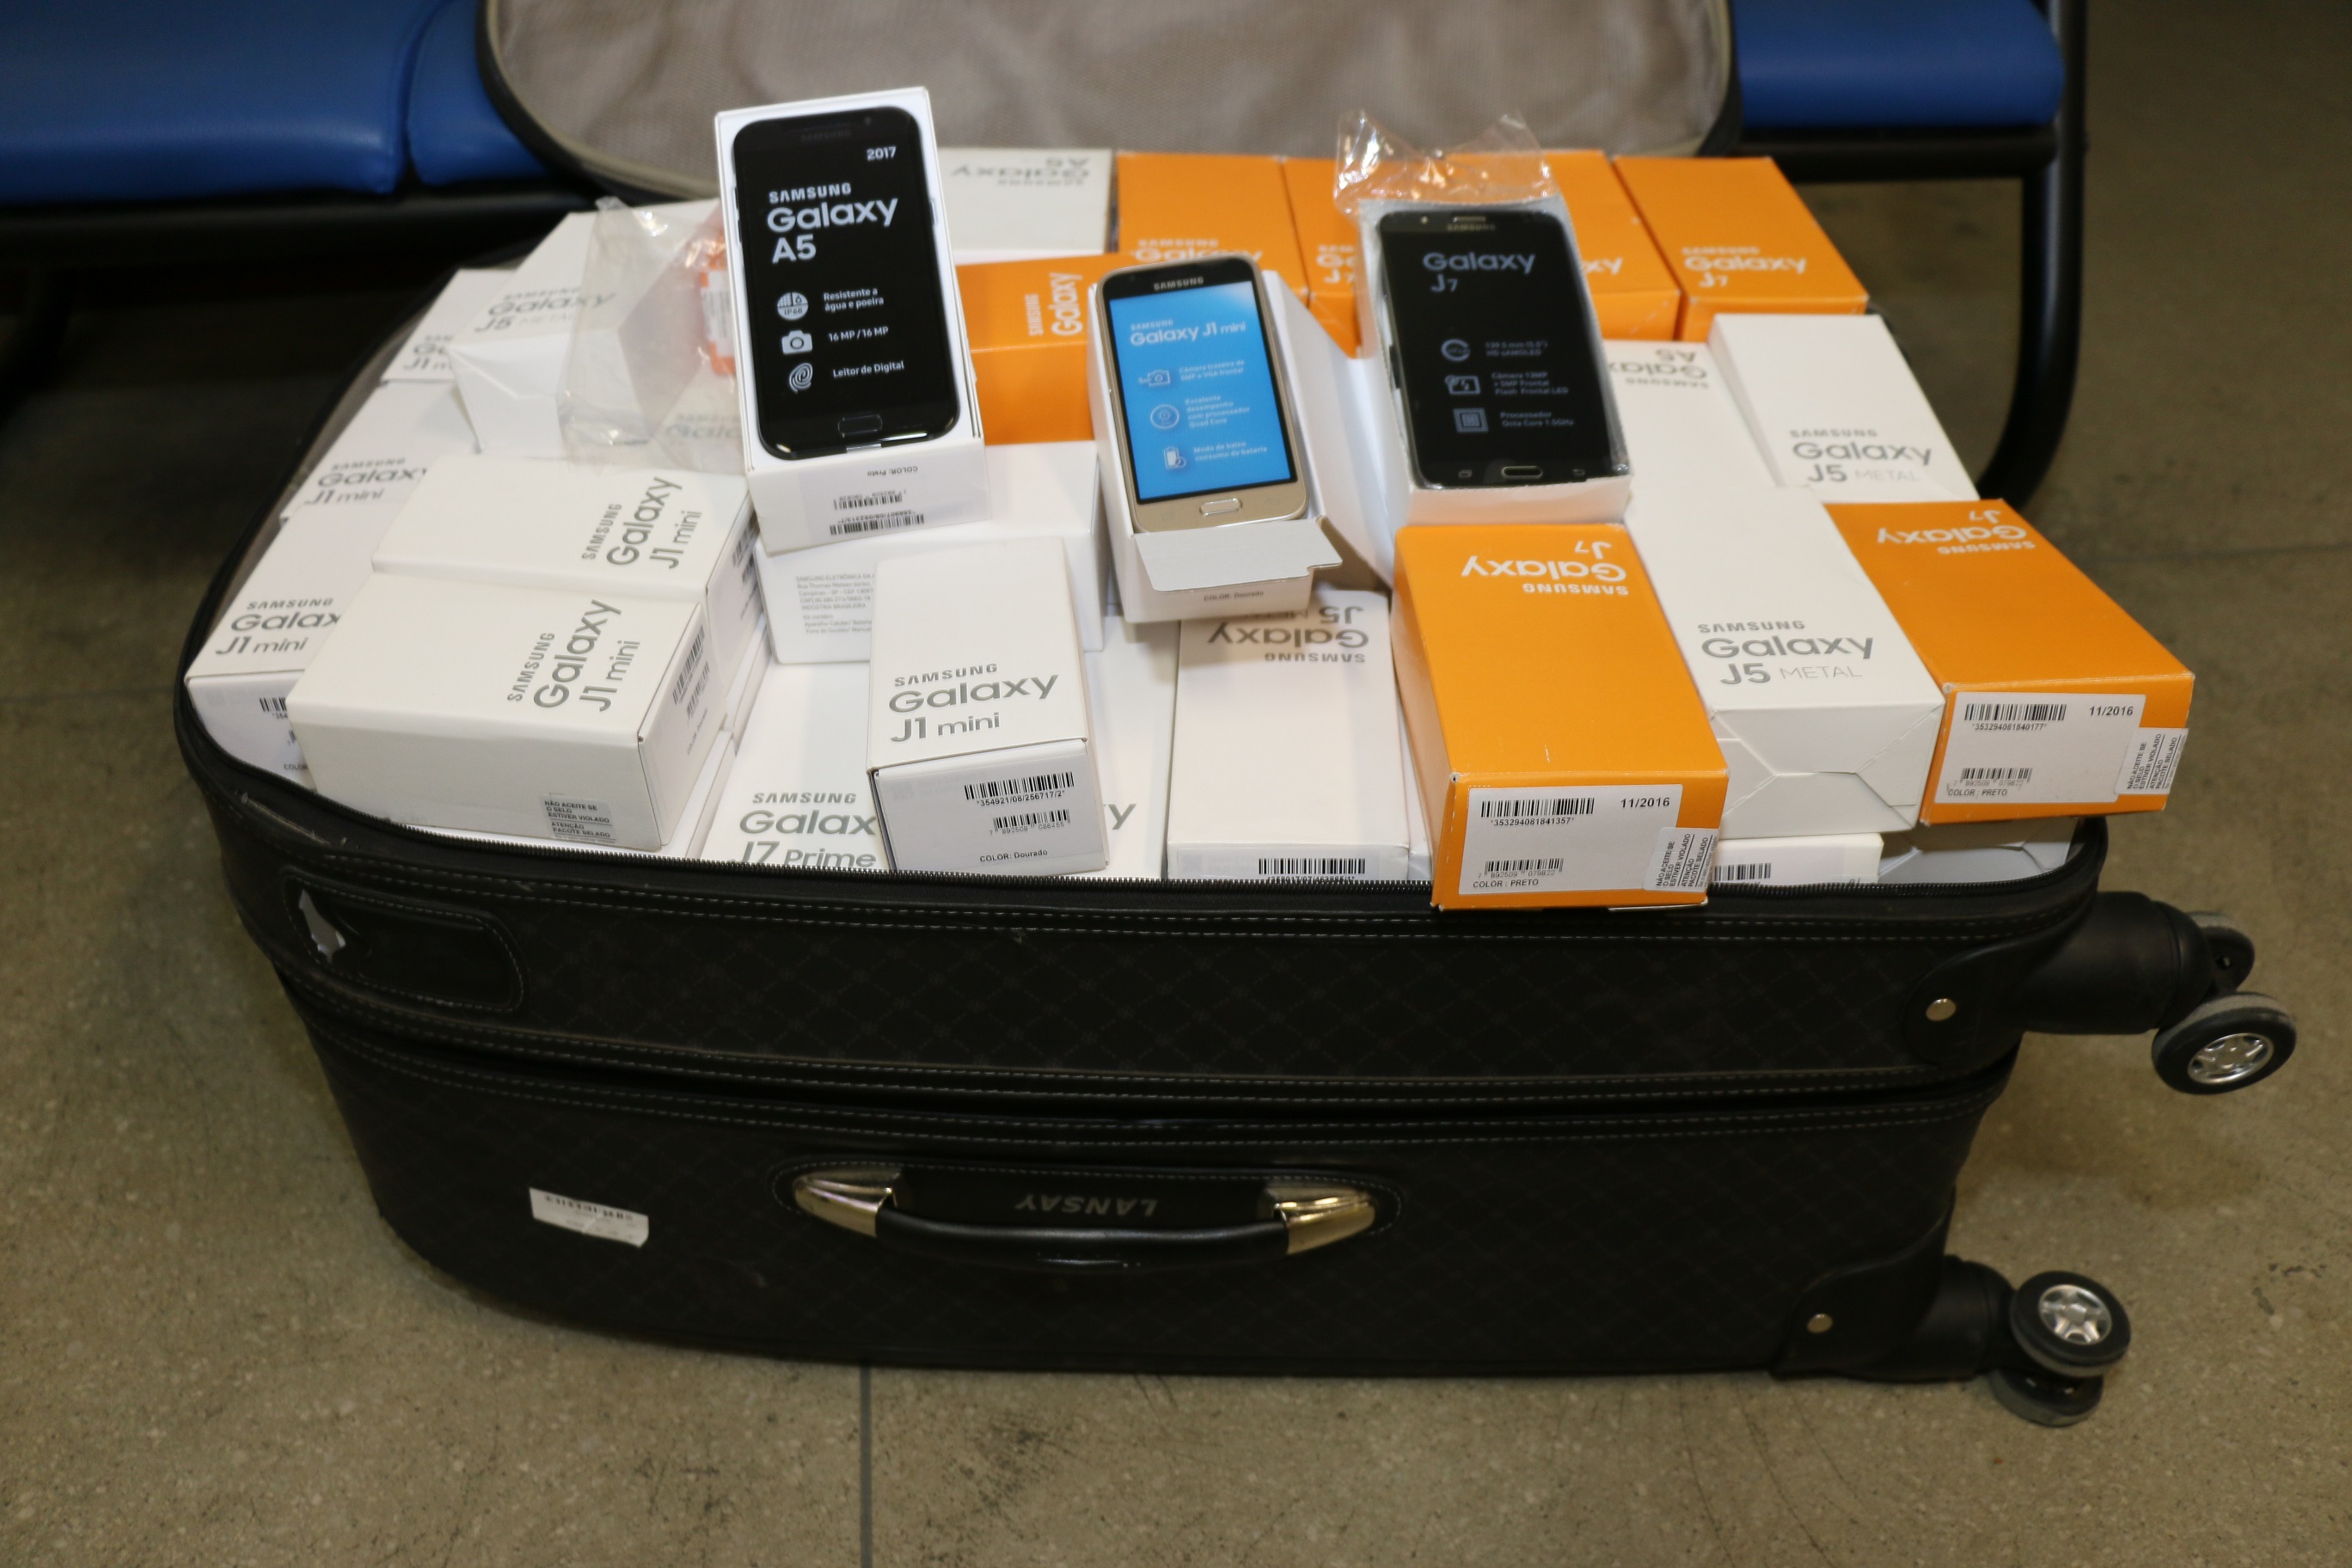 Mala com 150 celulares é apreendida no aeroporto de Salvador